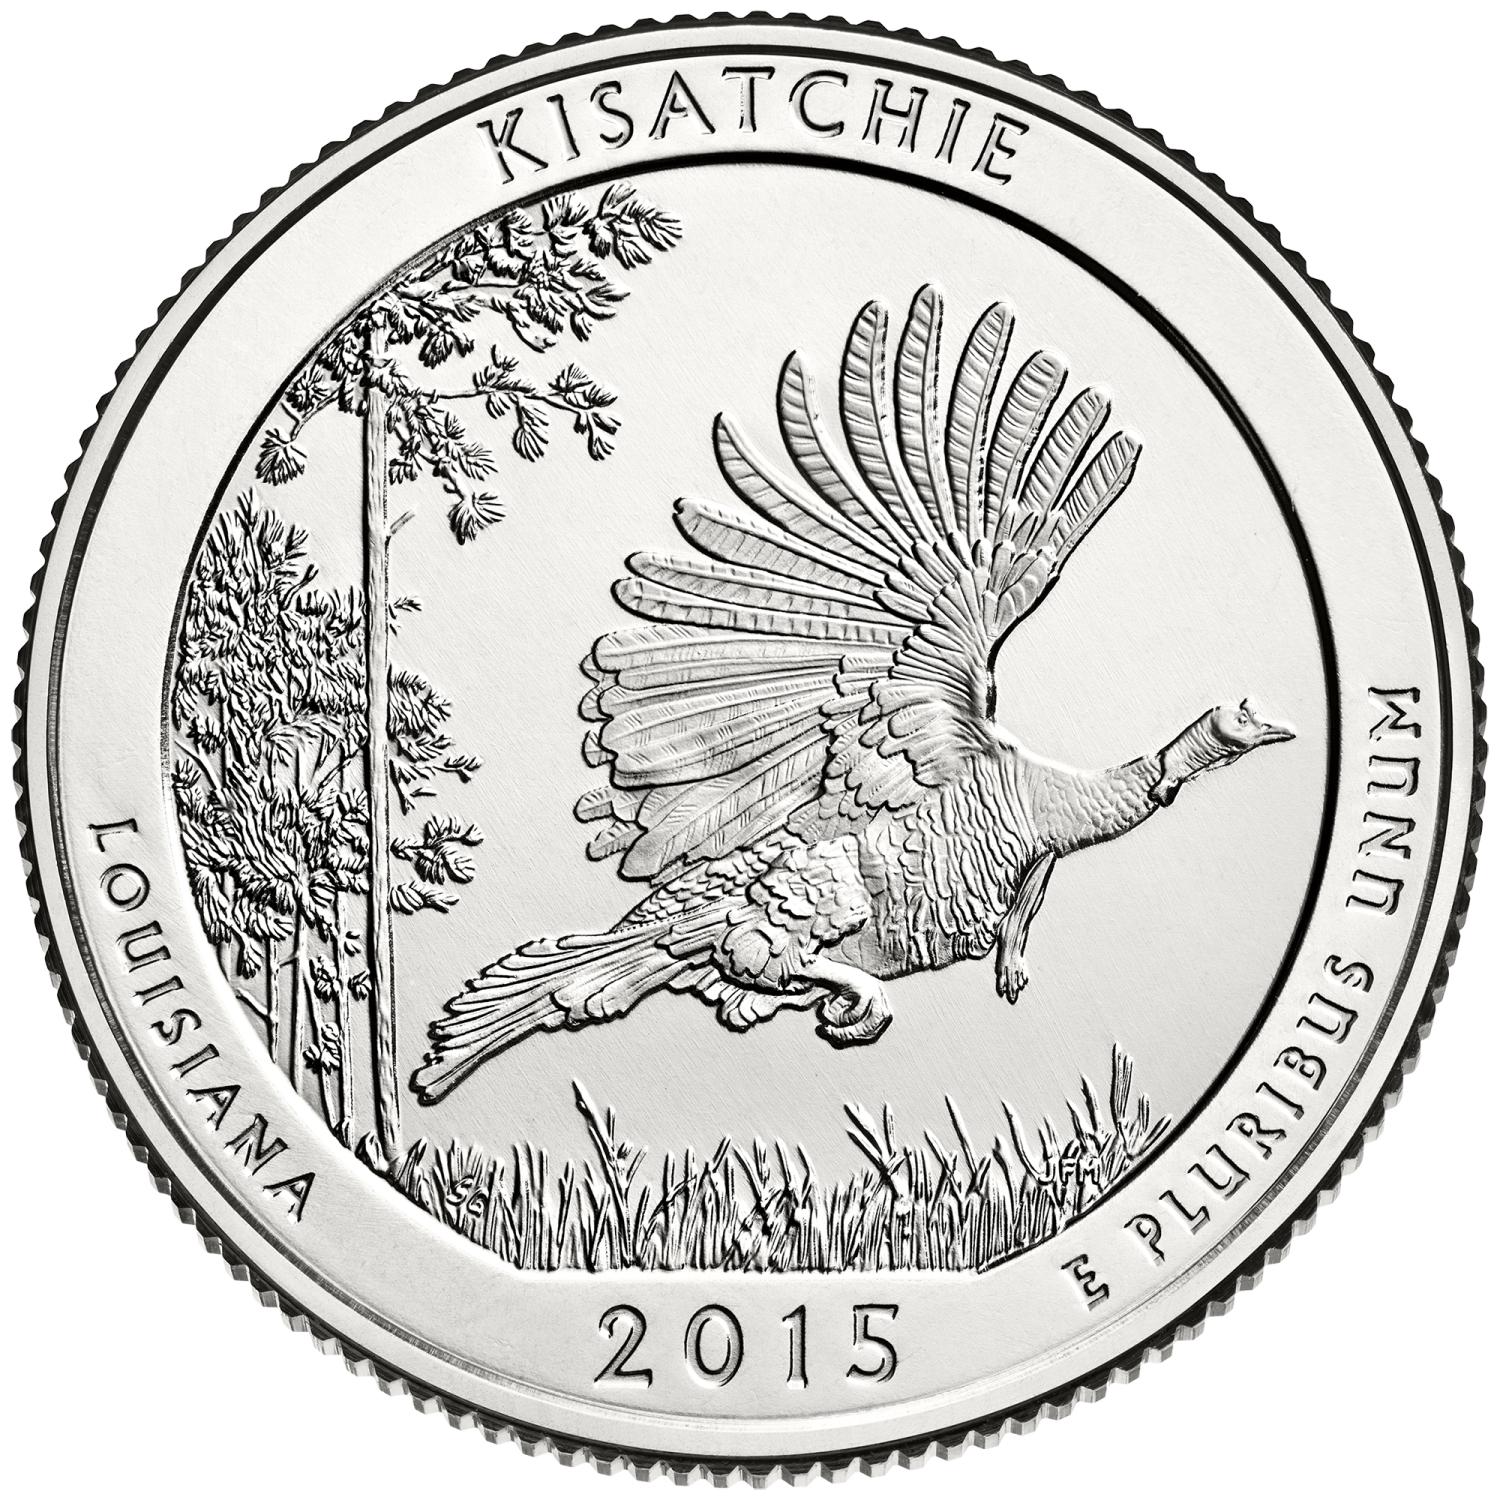 Quarter Dollar Commémorative des Etats-Unis 2015 - Kisatchie National Forest